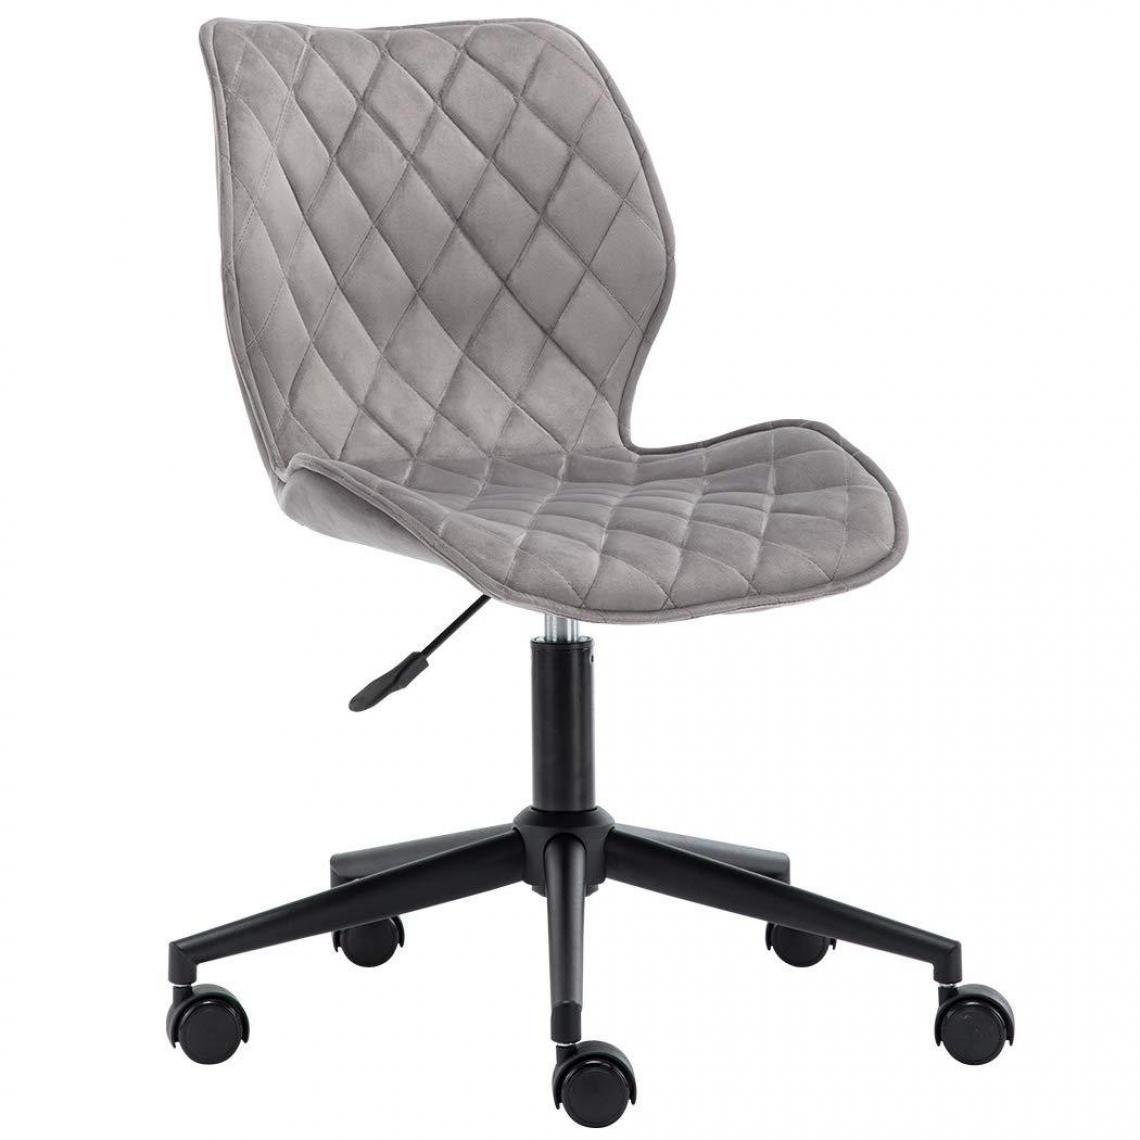 Decoshop26 - Chaise fauteuil de bureau en tissu velours gris hauteur réglable BUR09084 - Bureaux